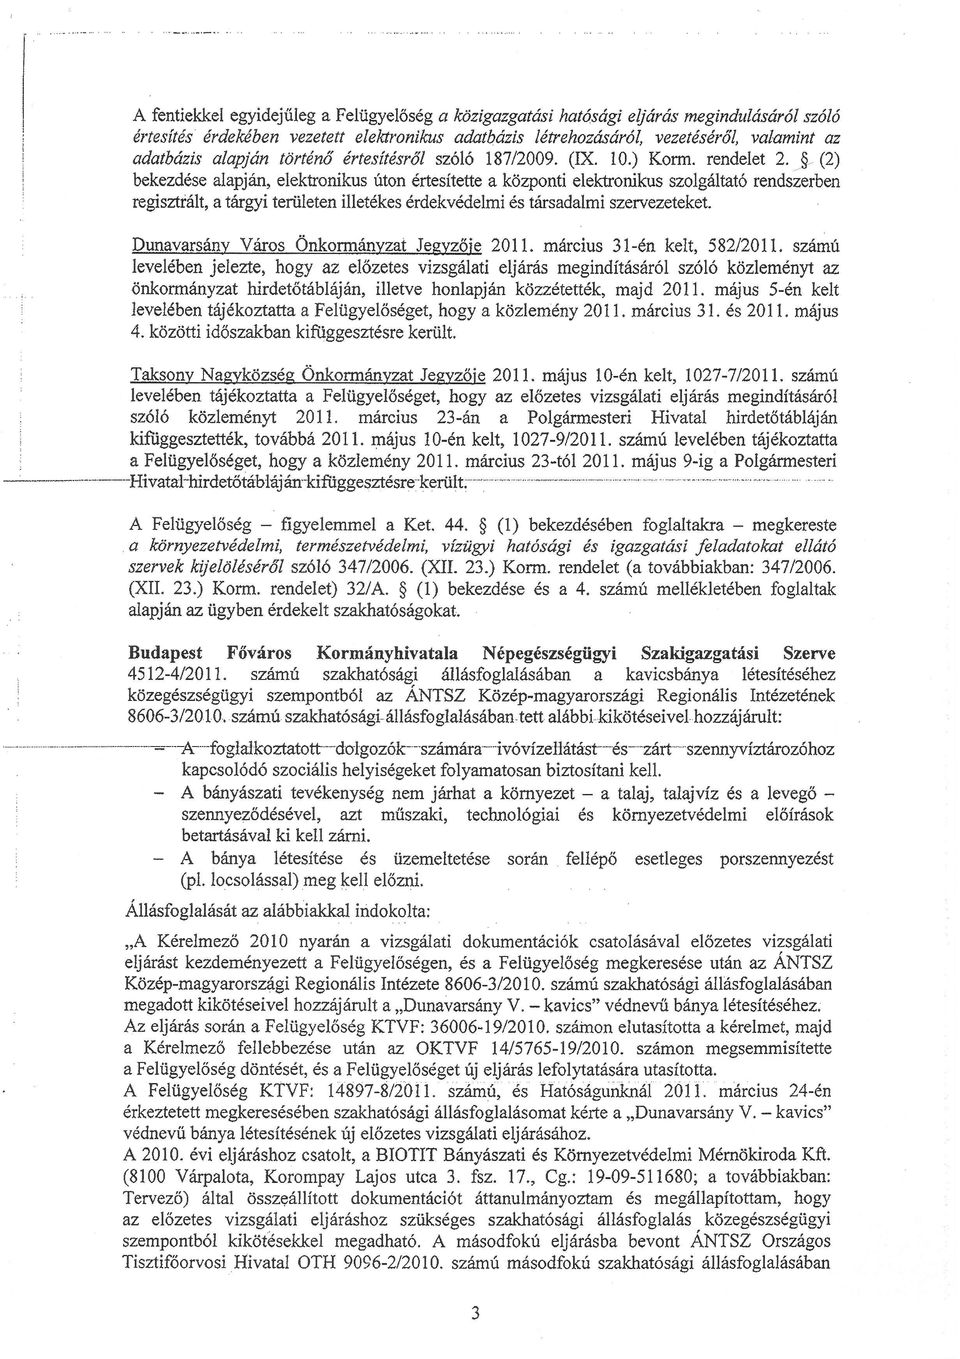 rendelet 2 }- (2) bekezdése alapjan elektíonikus úton értesítette a központi elekhonikus szolgltató rendszerben rcgisni tatíltgyi teriileten illetékes érdekvédelmi és trrsadalmi szervezeteket.